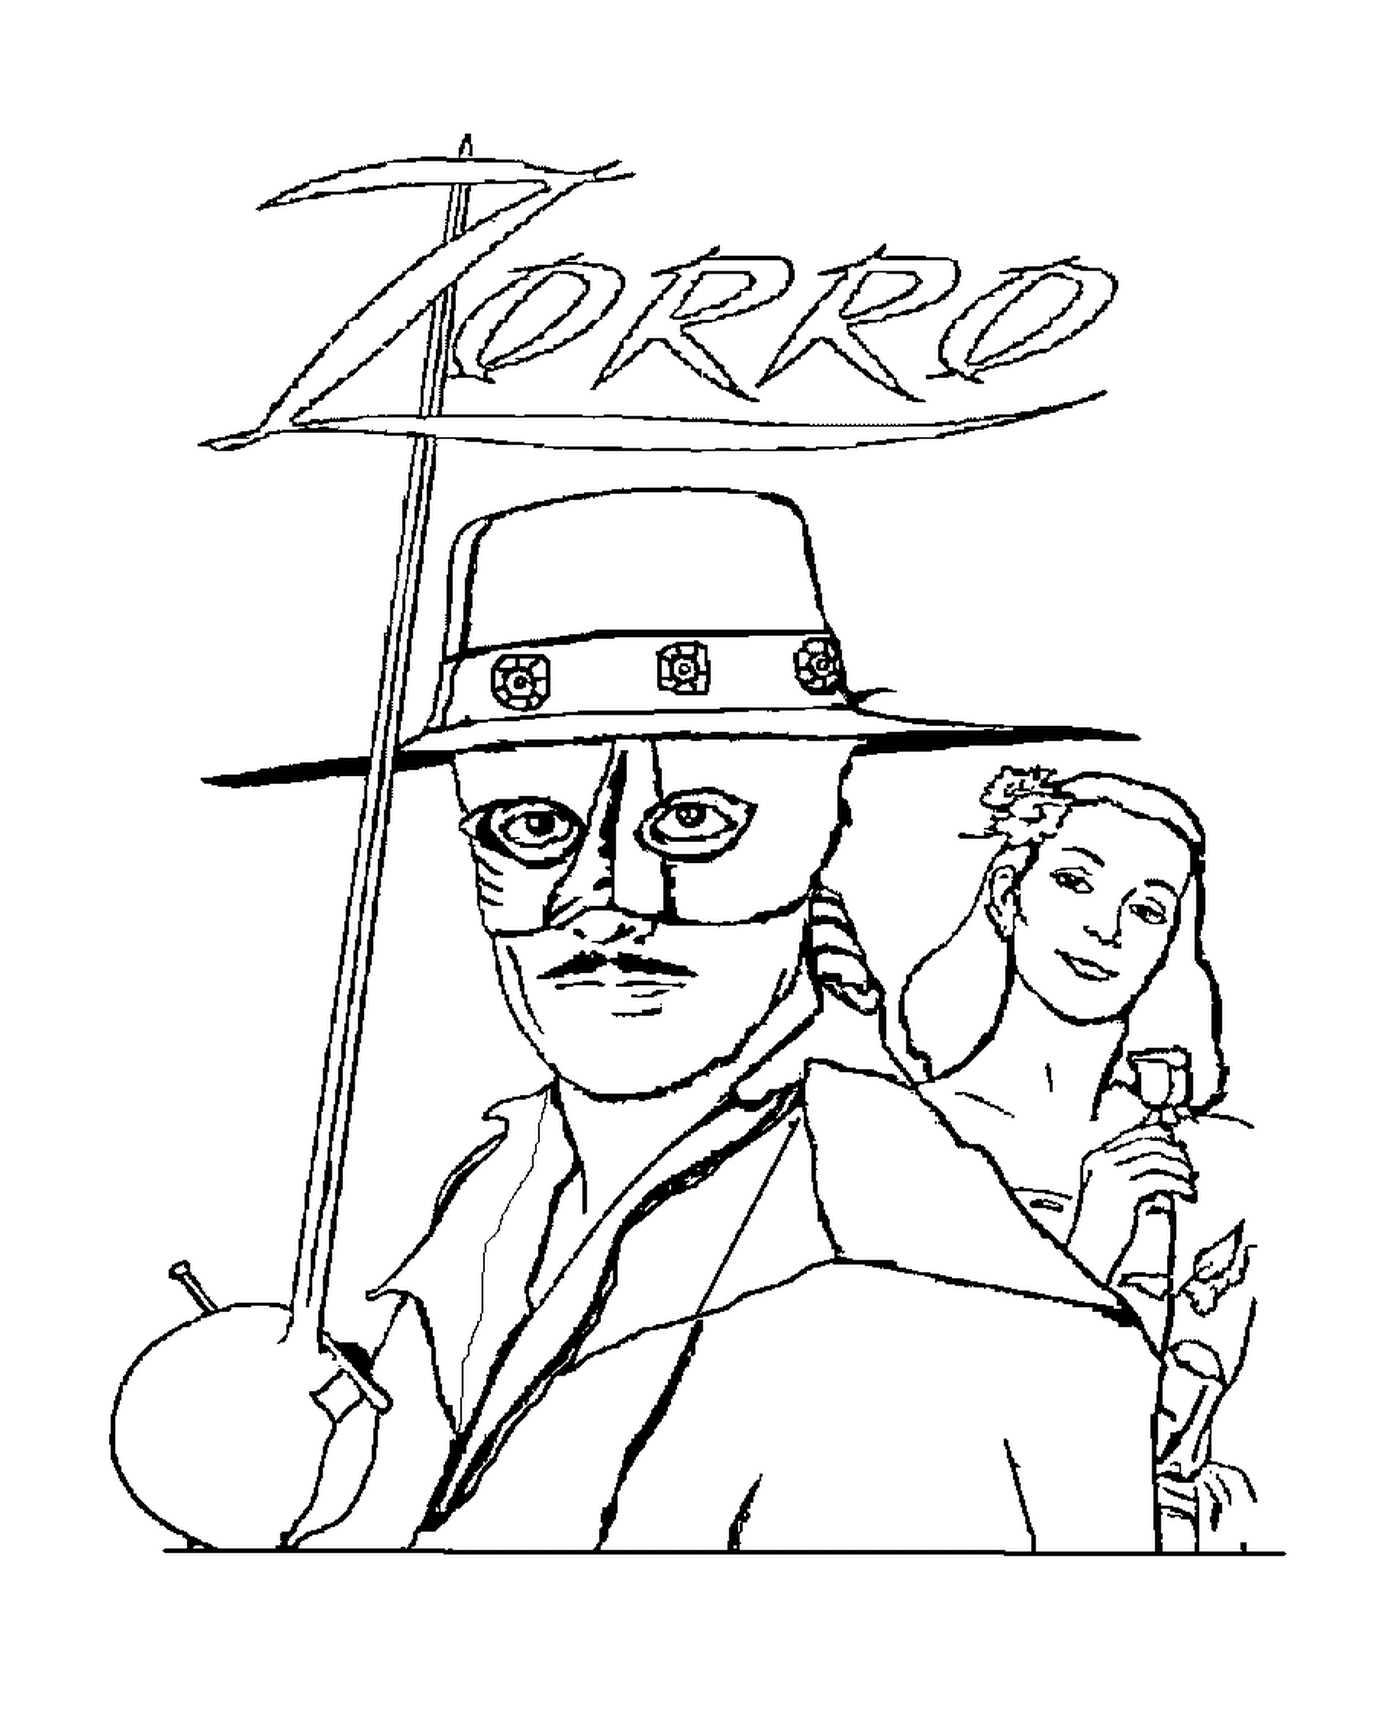  Zorro il vigilante mascherato e un uomo 